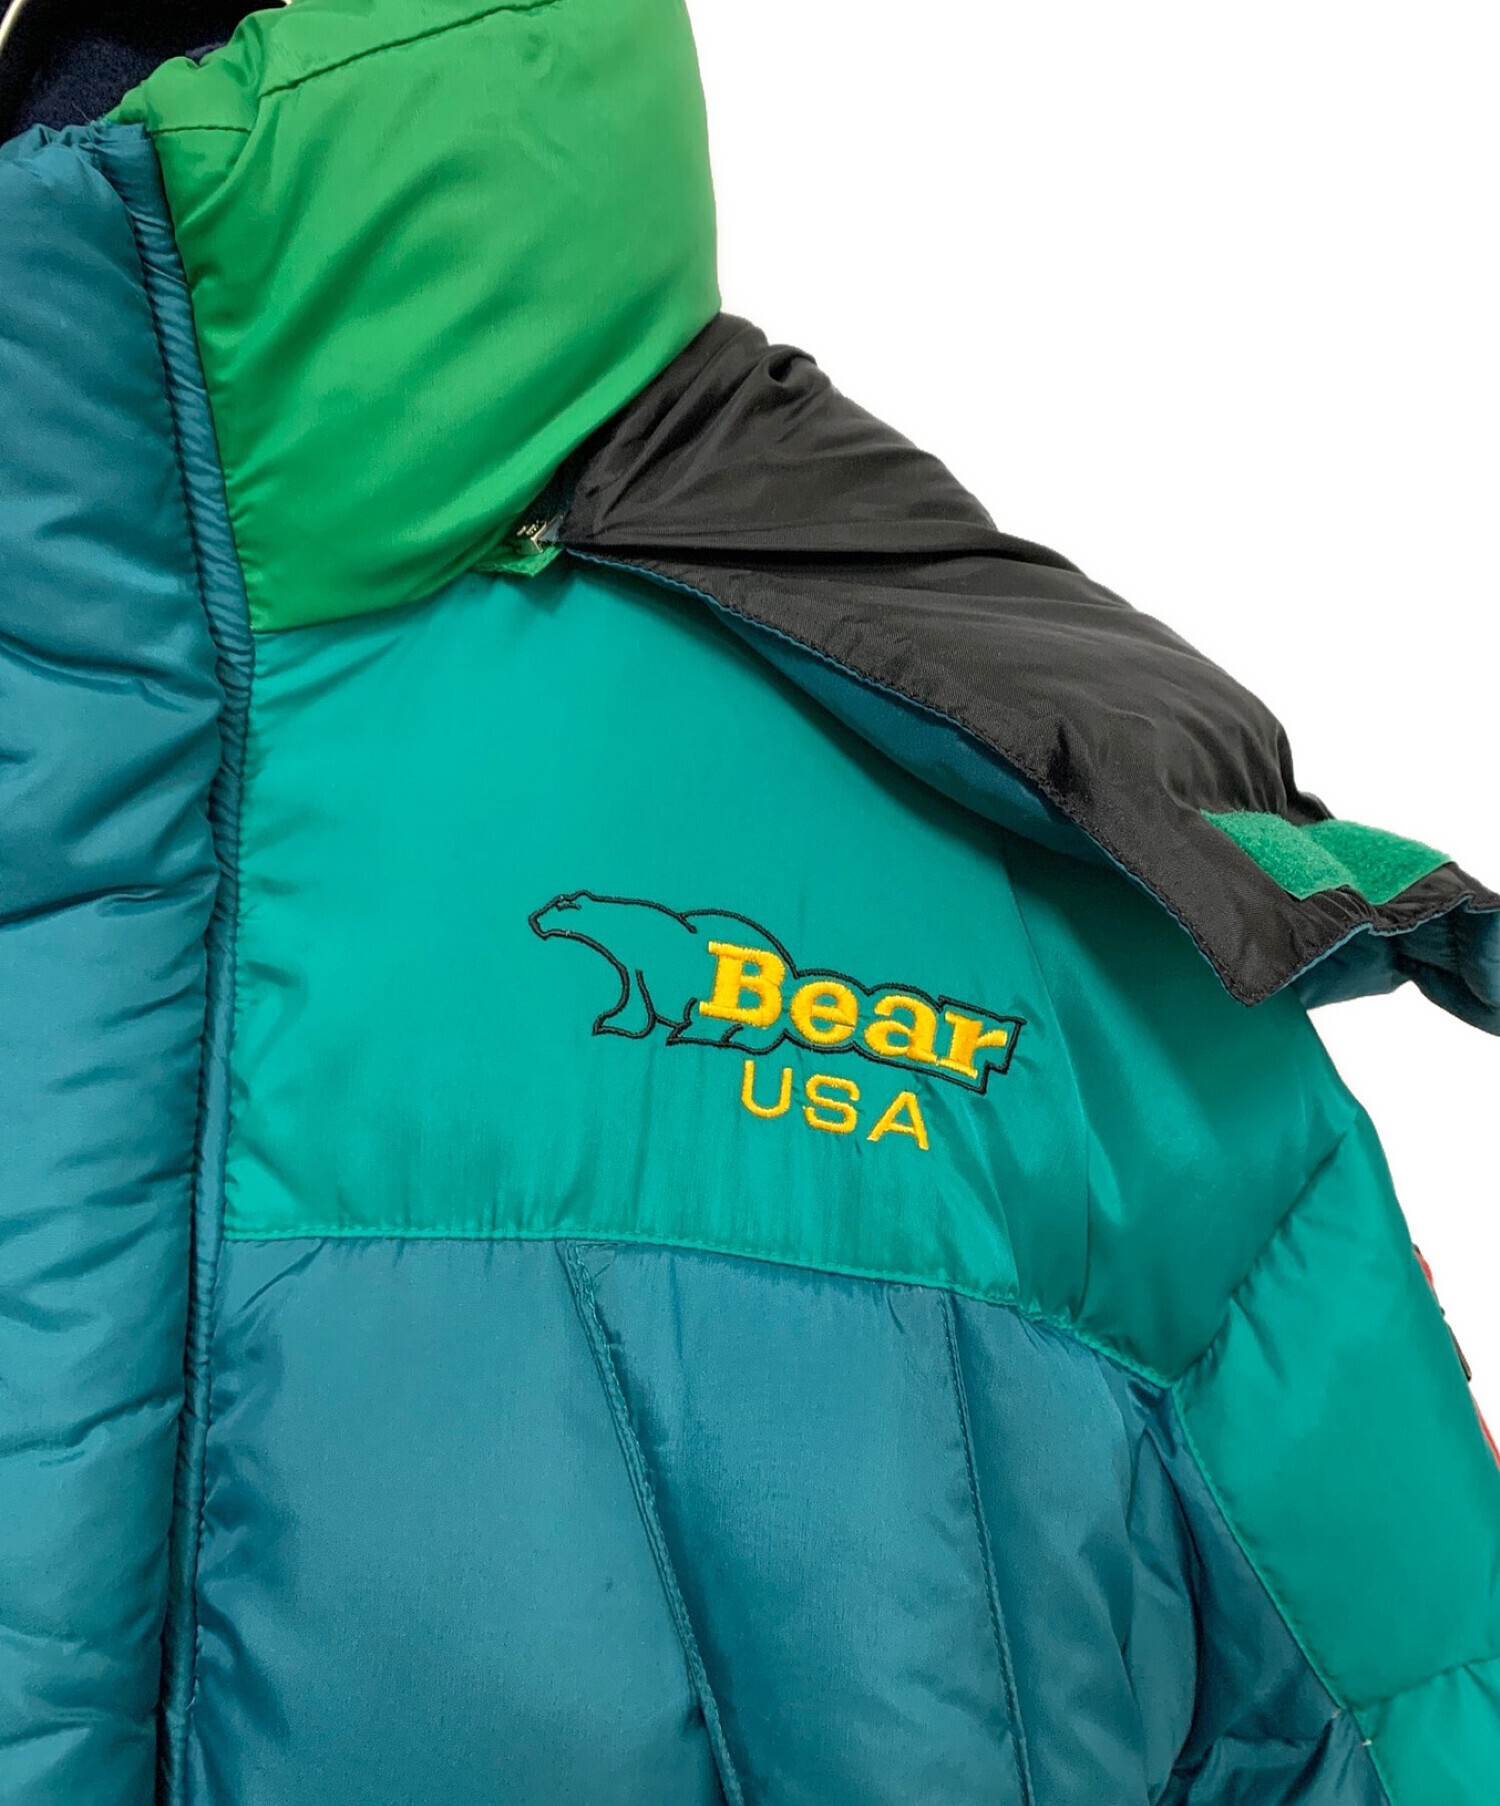 Bear USA (ベア ユーエスエー) ダウンジャケット グリーン サイズ:L